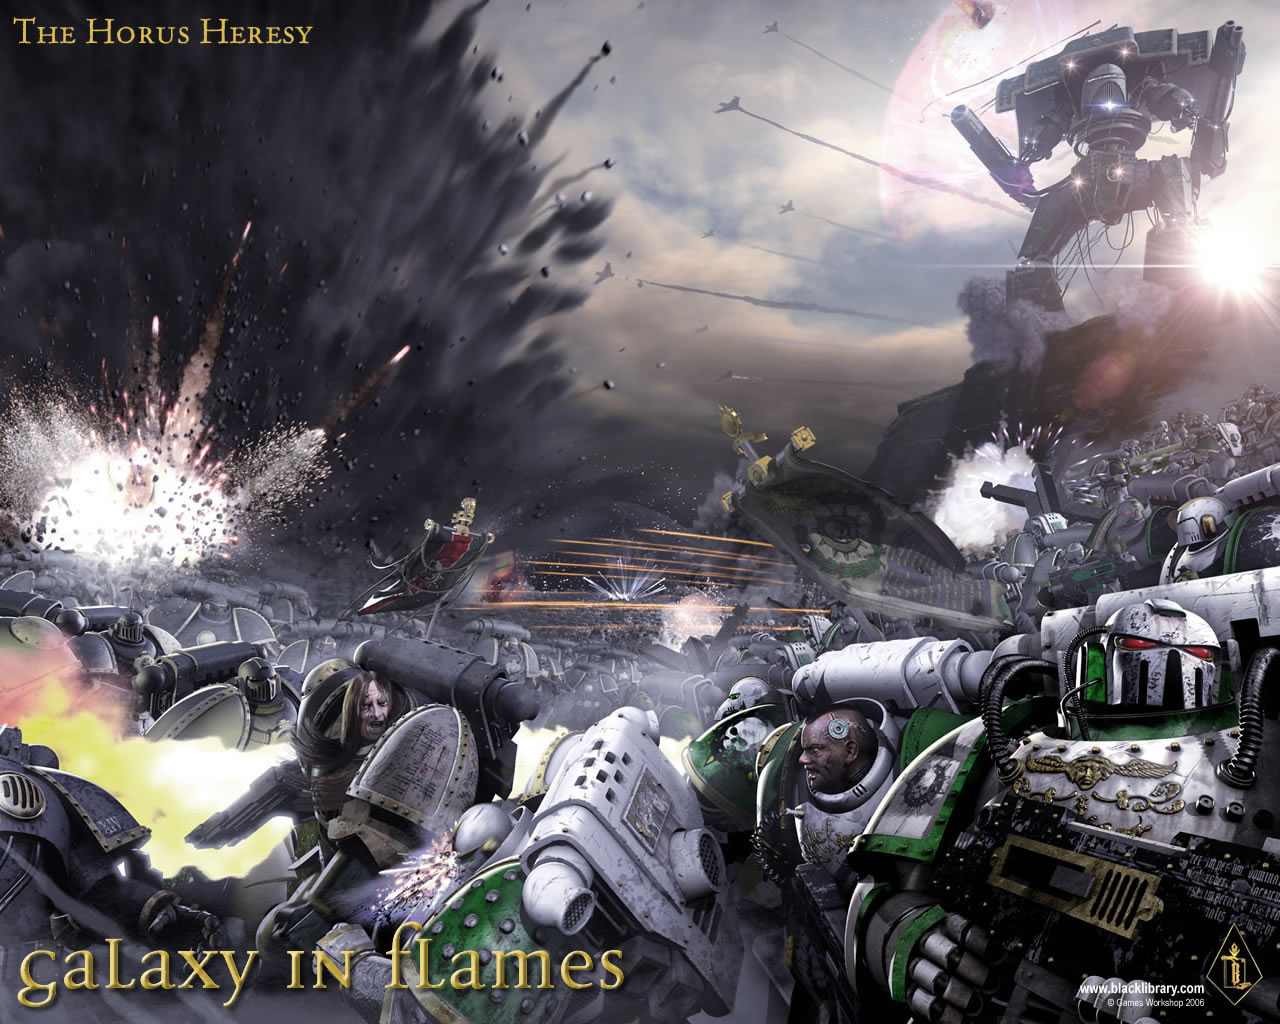 fondo de pantalla herejía de horus,juego de acción y aventura,juego de pc,juego de disparos,juegos,cg artwork